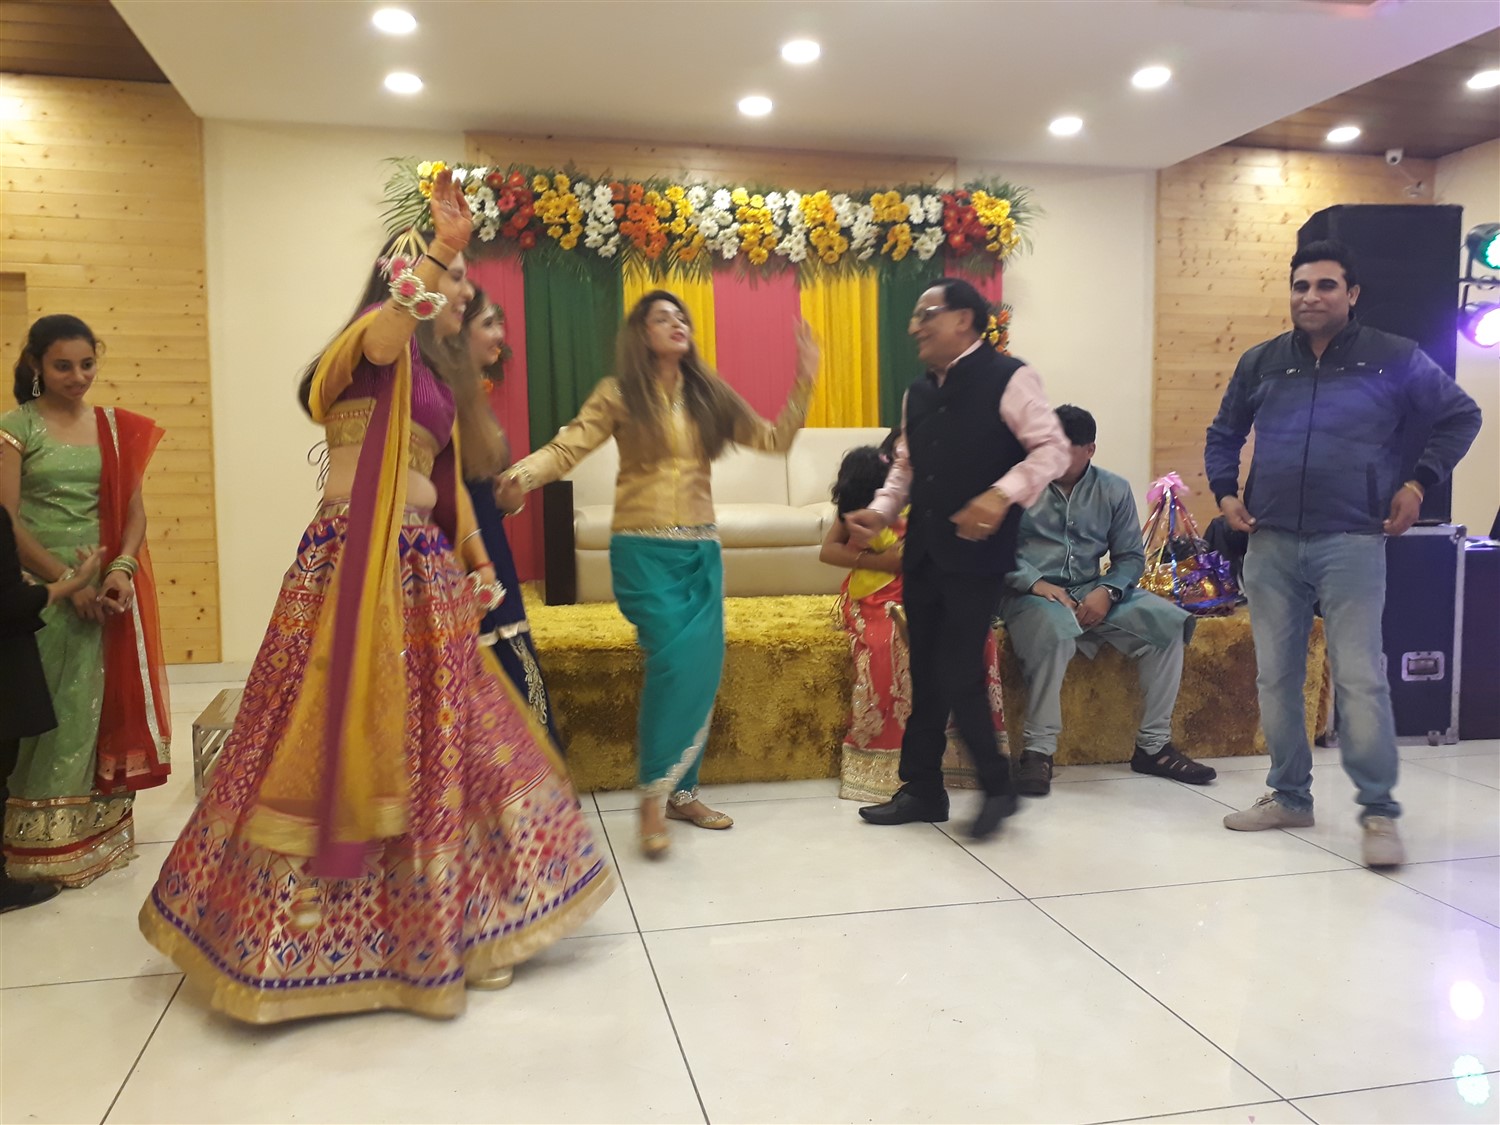 Attended Sister Wedding in Dehradun : India (Nov'17) 8